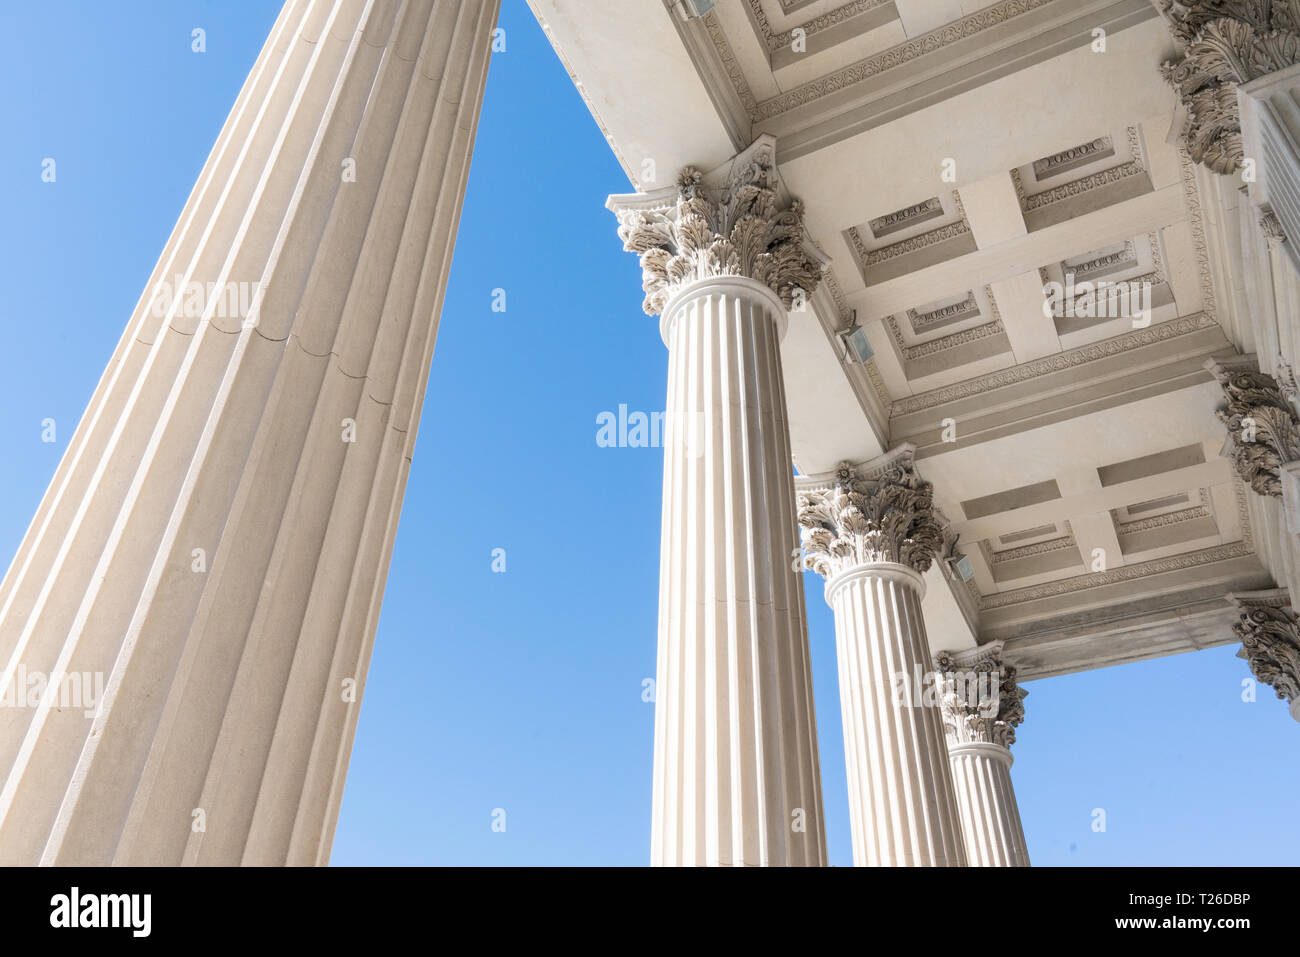 Haut de page détail des colonnes en pierre d'architecture néo-grec Banque D'Images